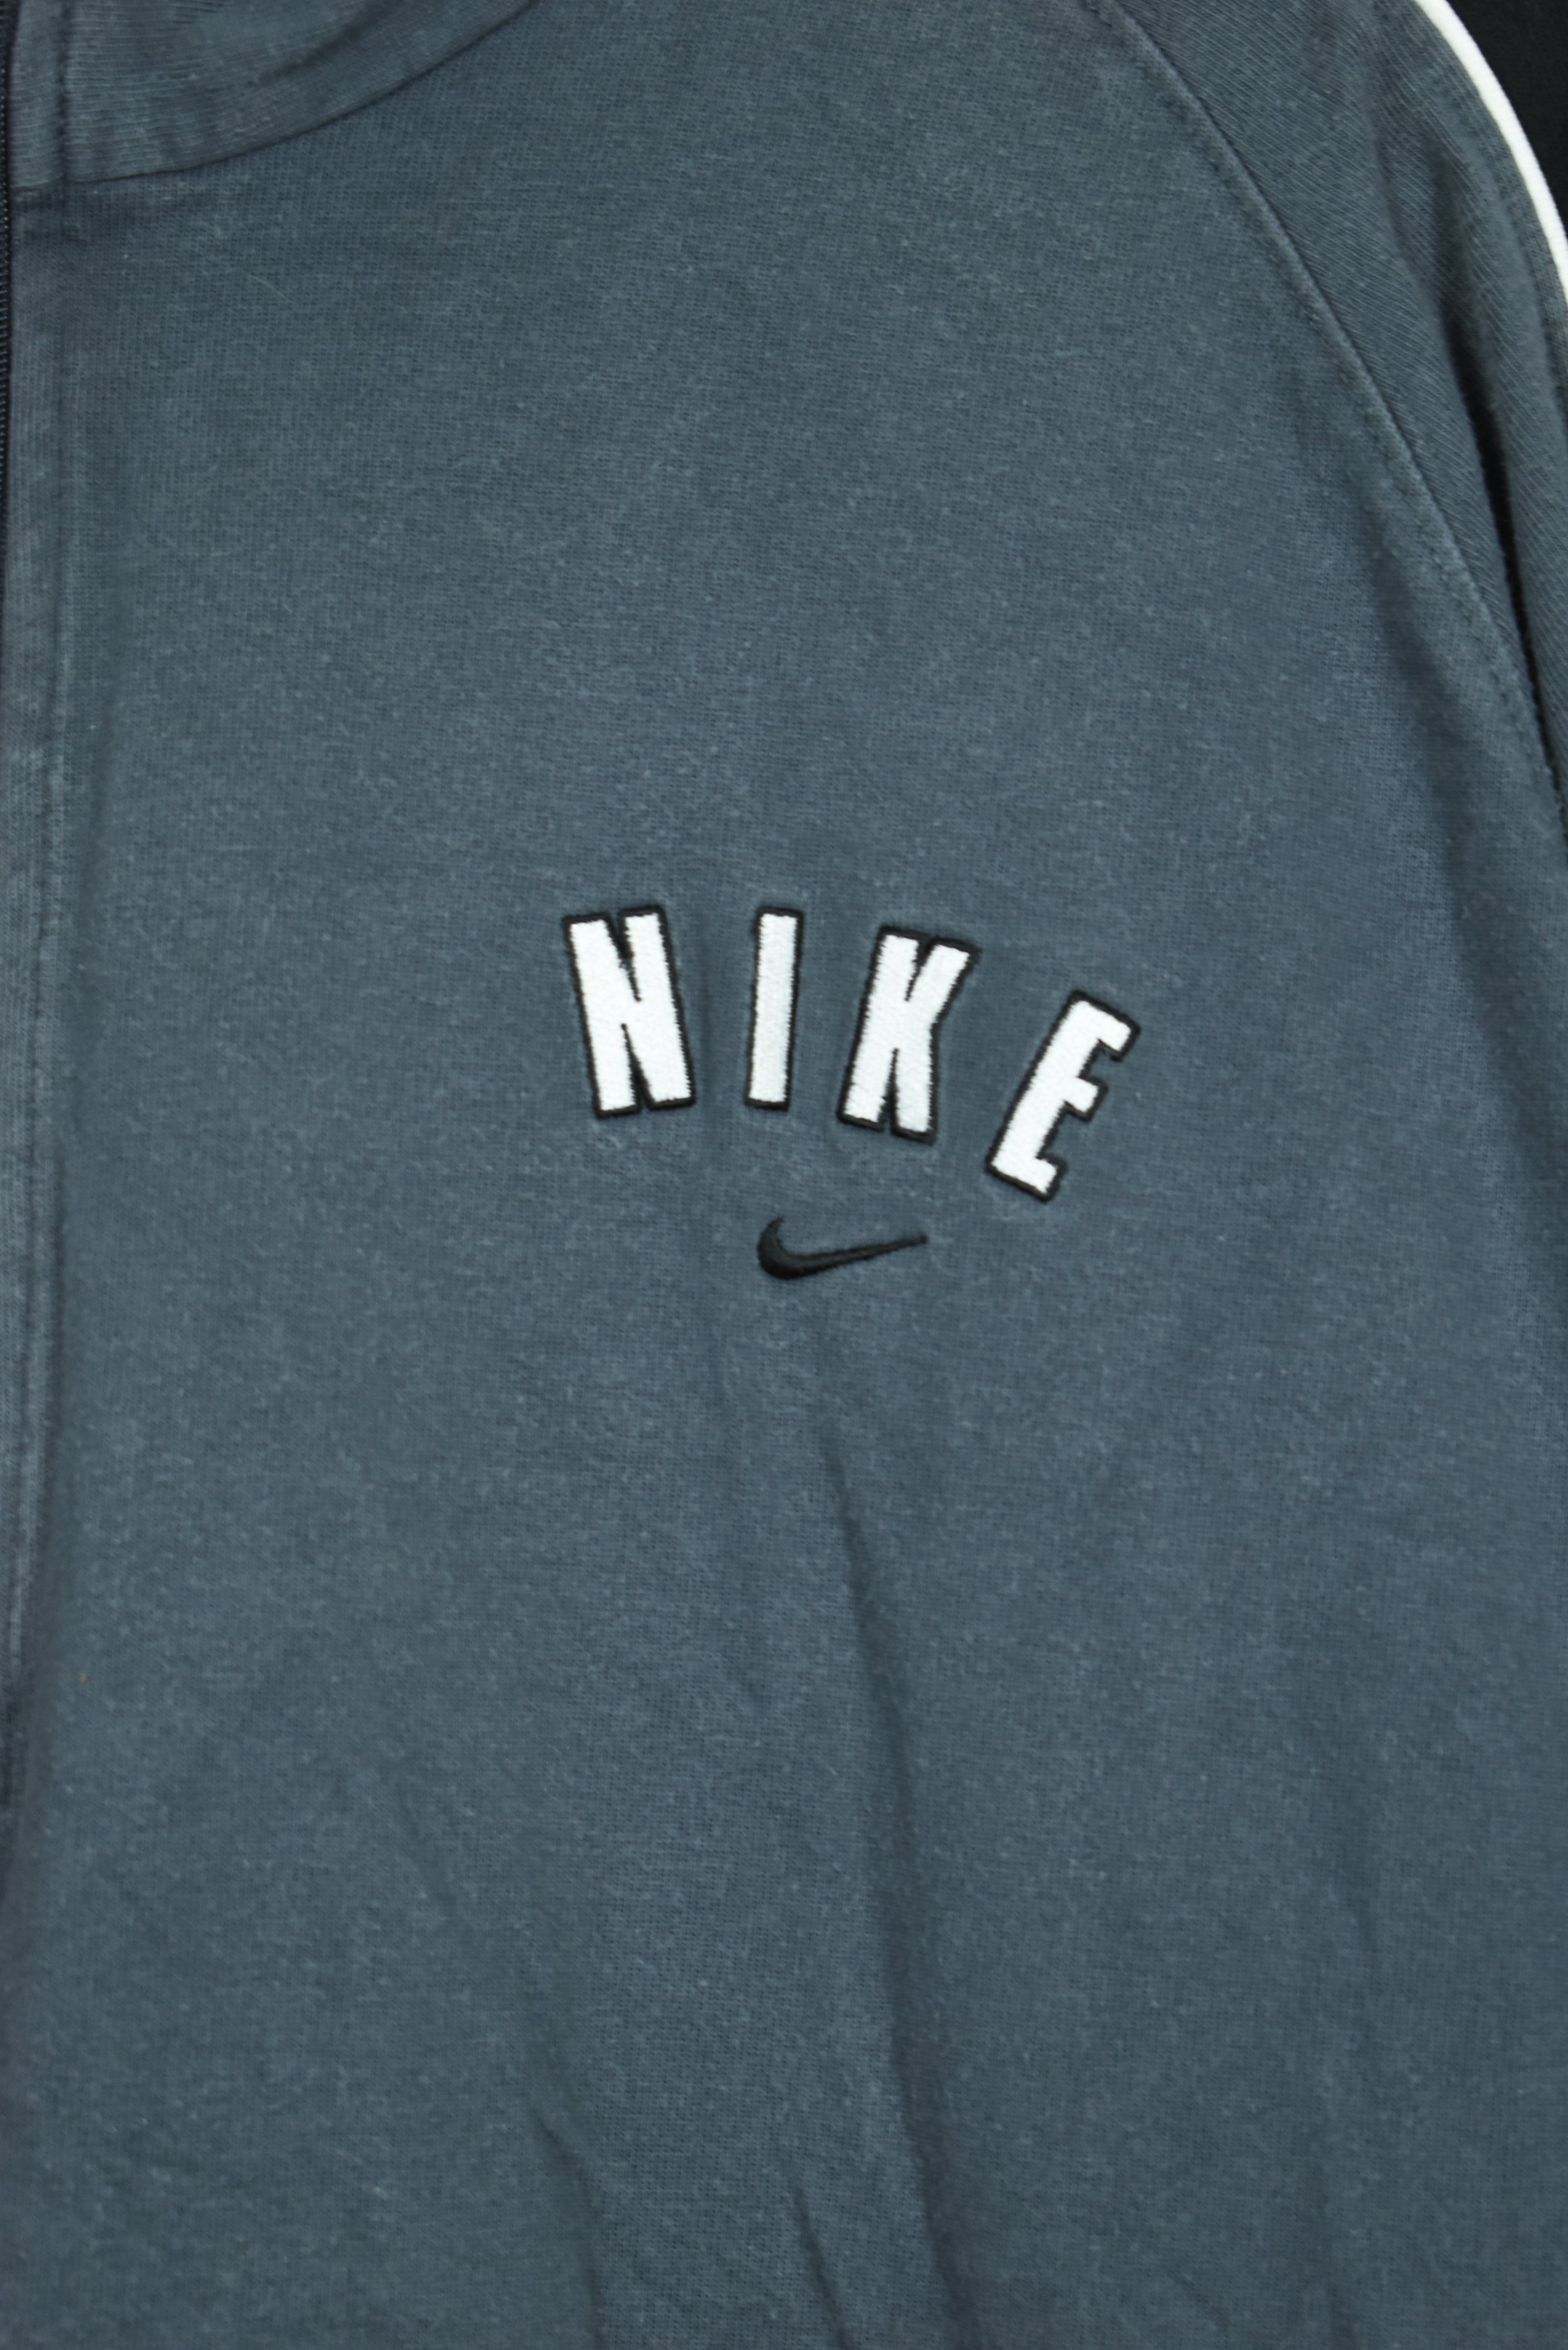 Vintage Nike Embroidery 1/4 Zip Sweatshirt XXL